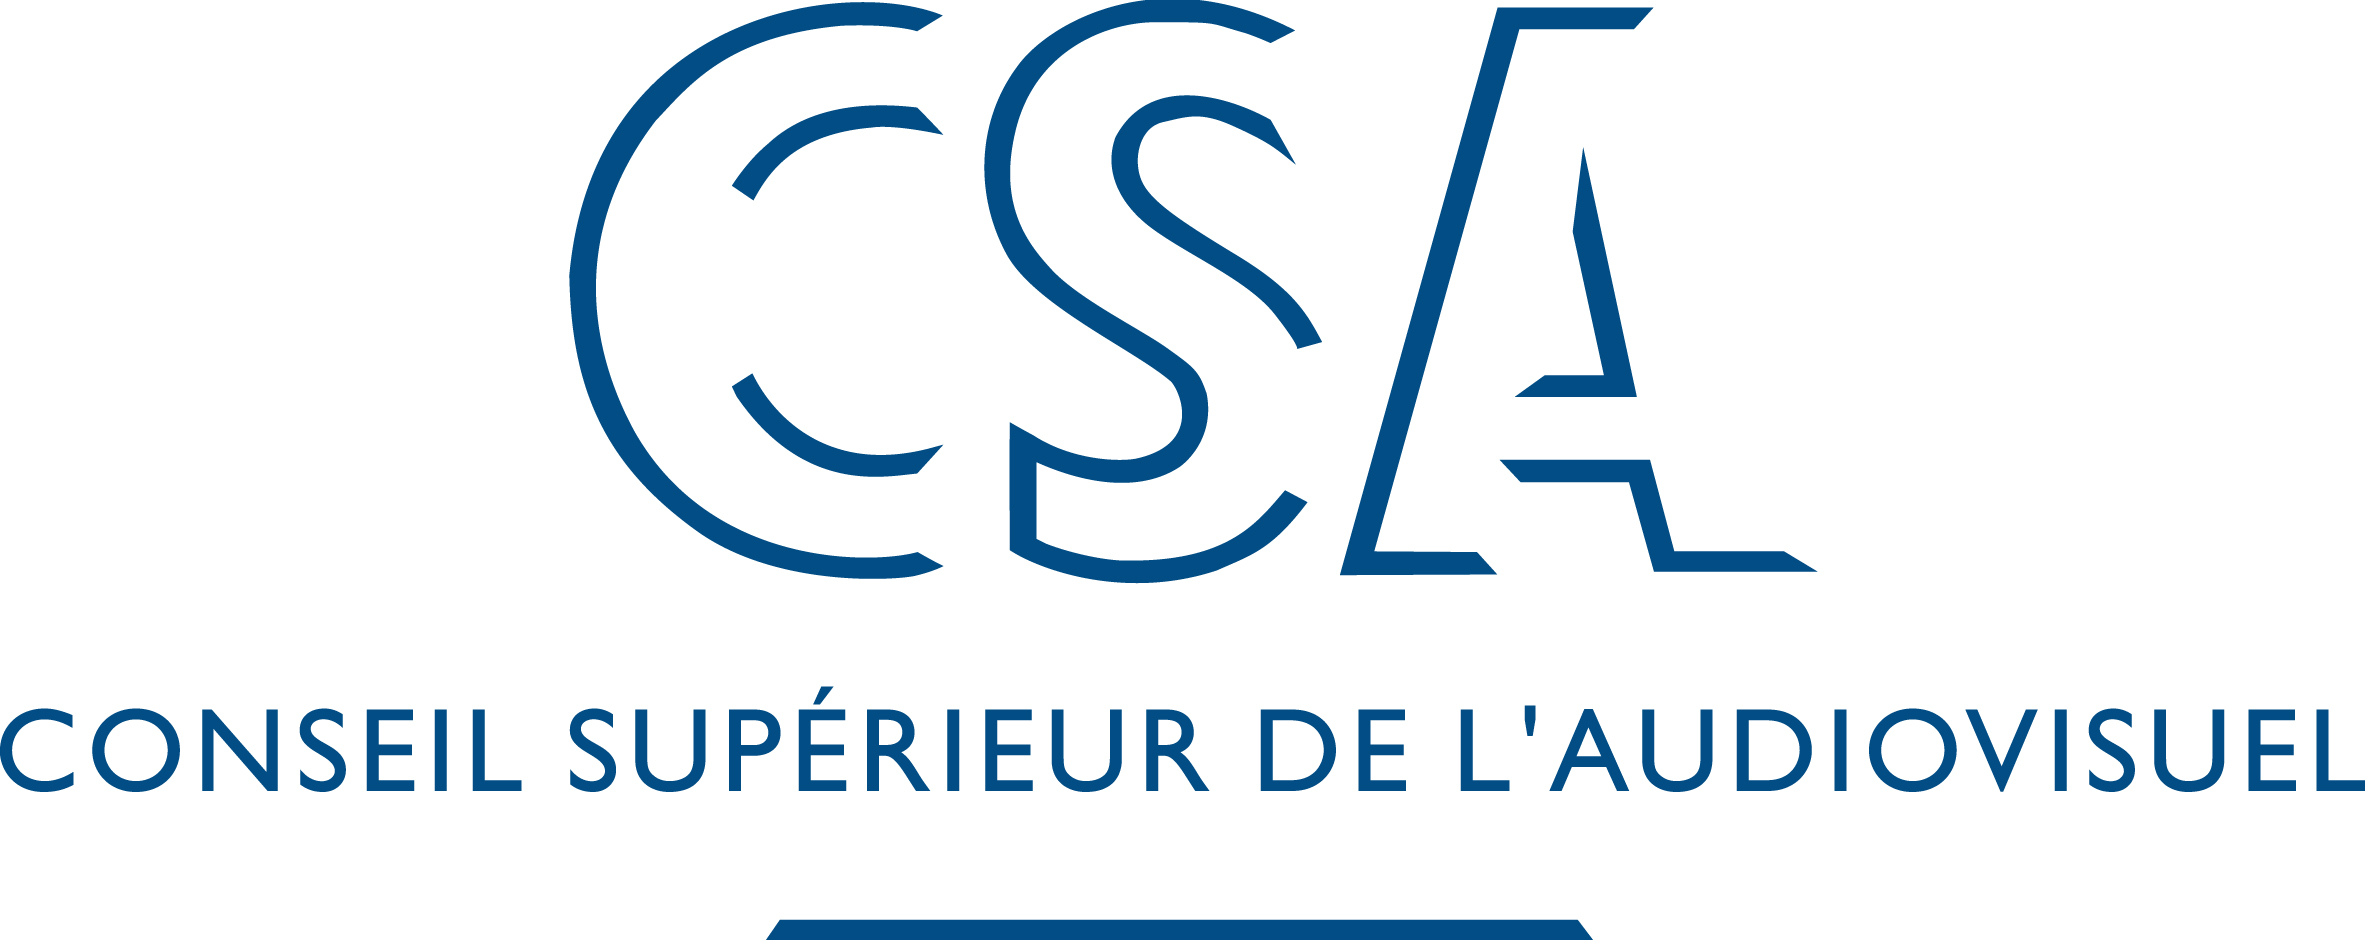 CSA : appels à candidatures à Toulouse et Dijon